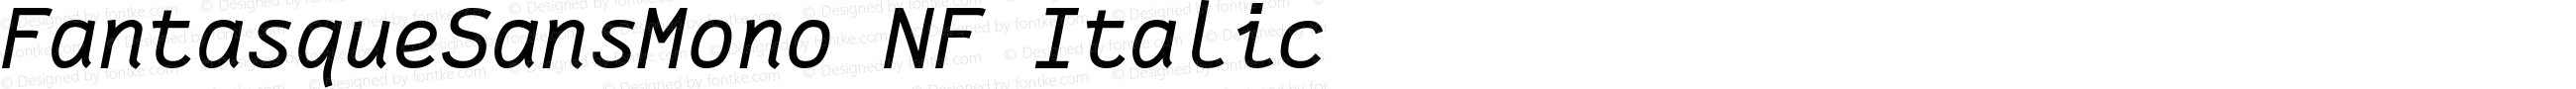 Fantasque Sans Mono Italic Nerd Font Plus Font Awesome Plus Octicons Plus Pomicons Windows Compatible